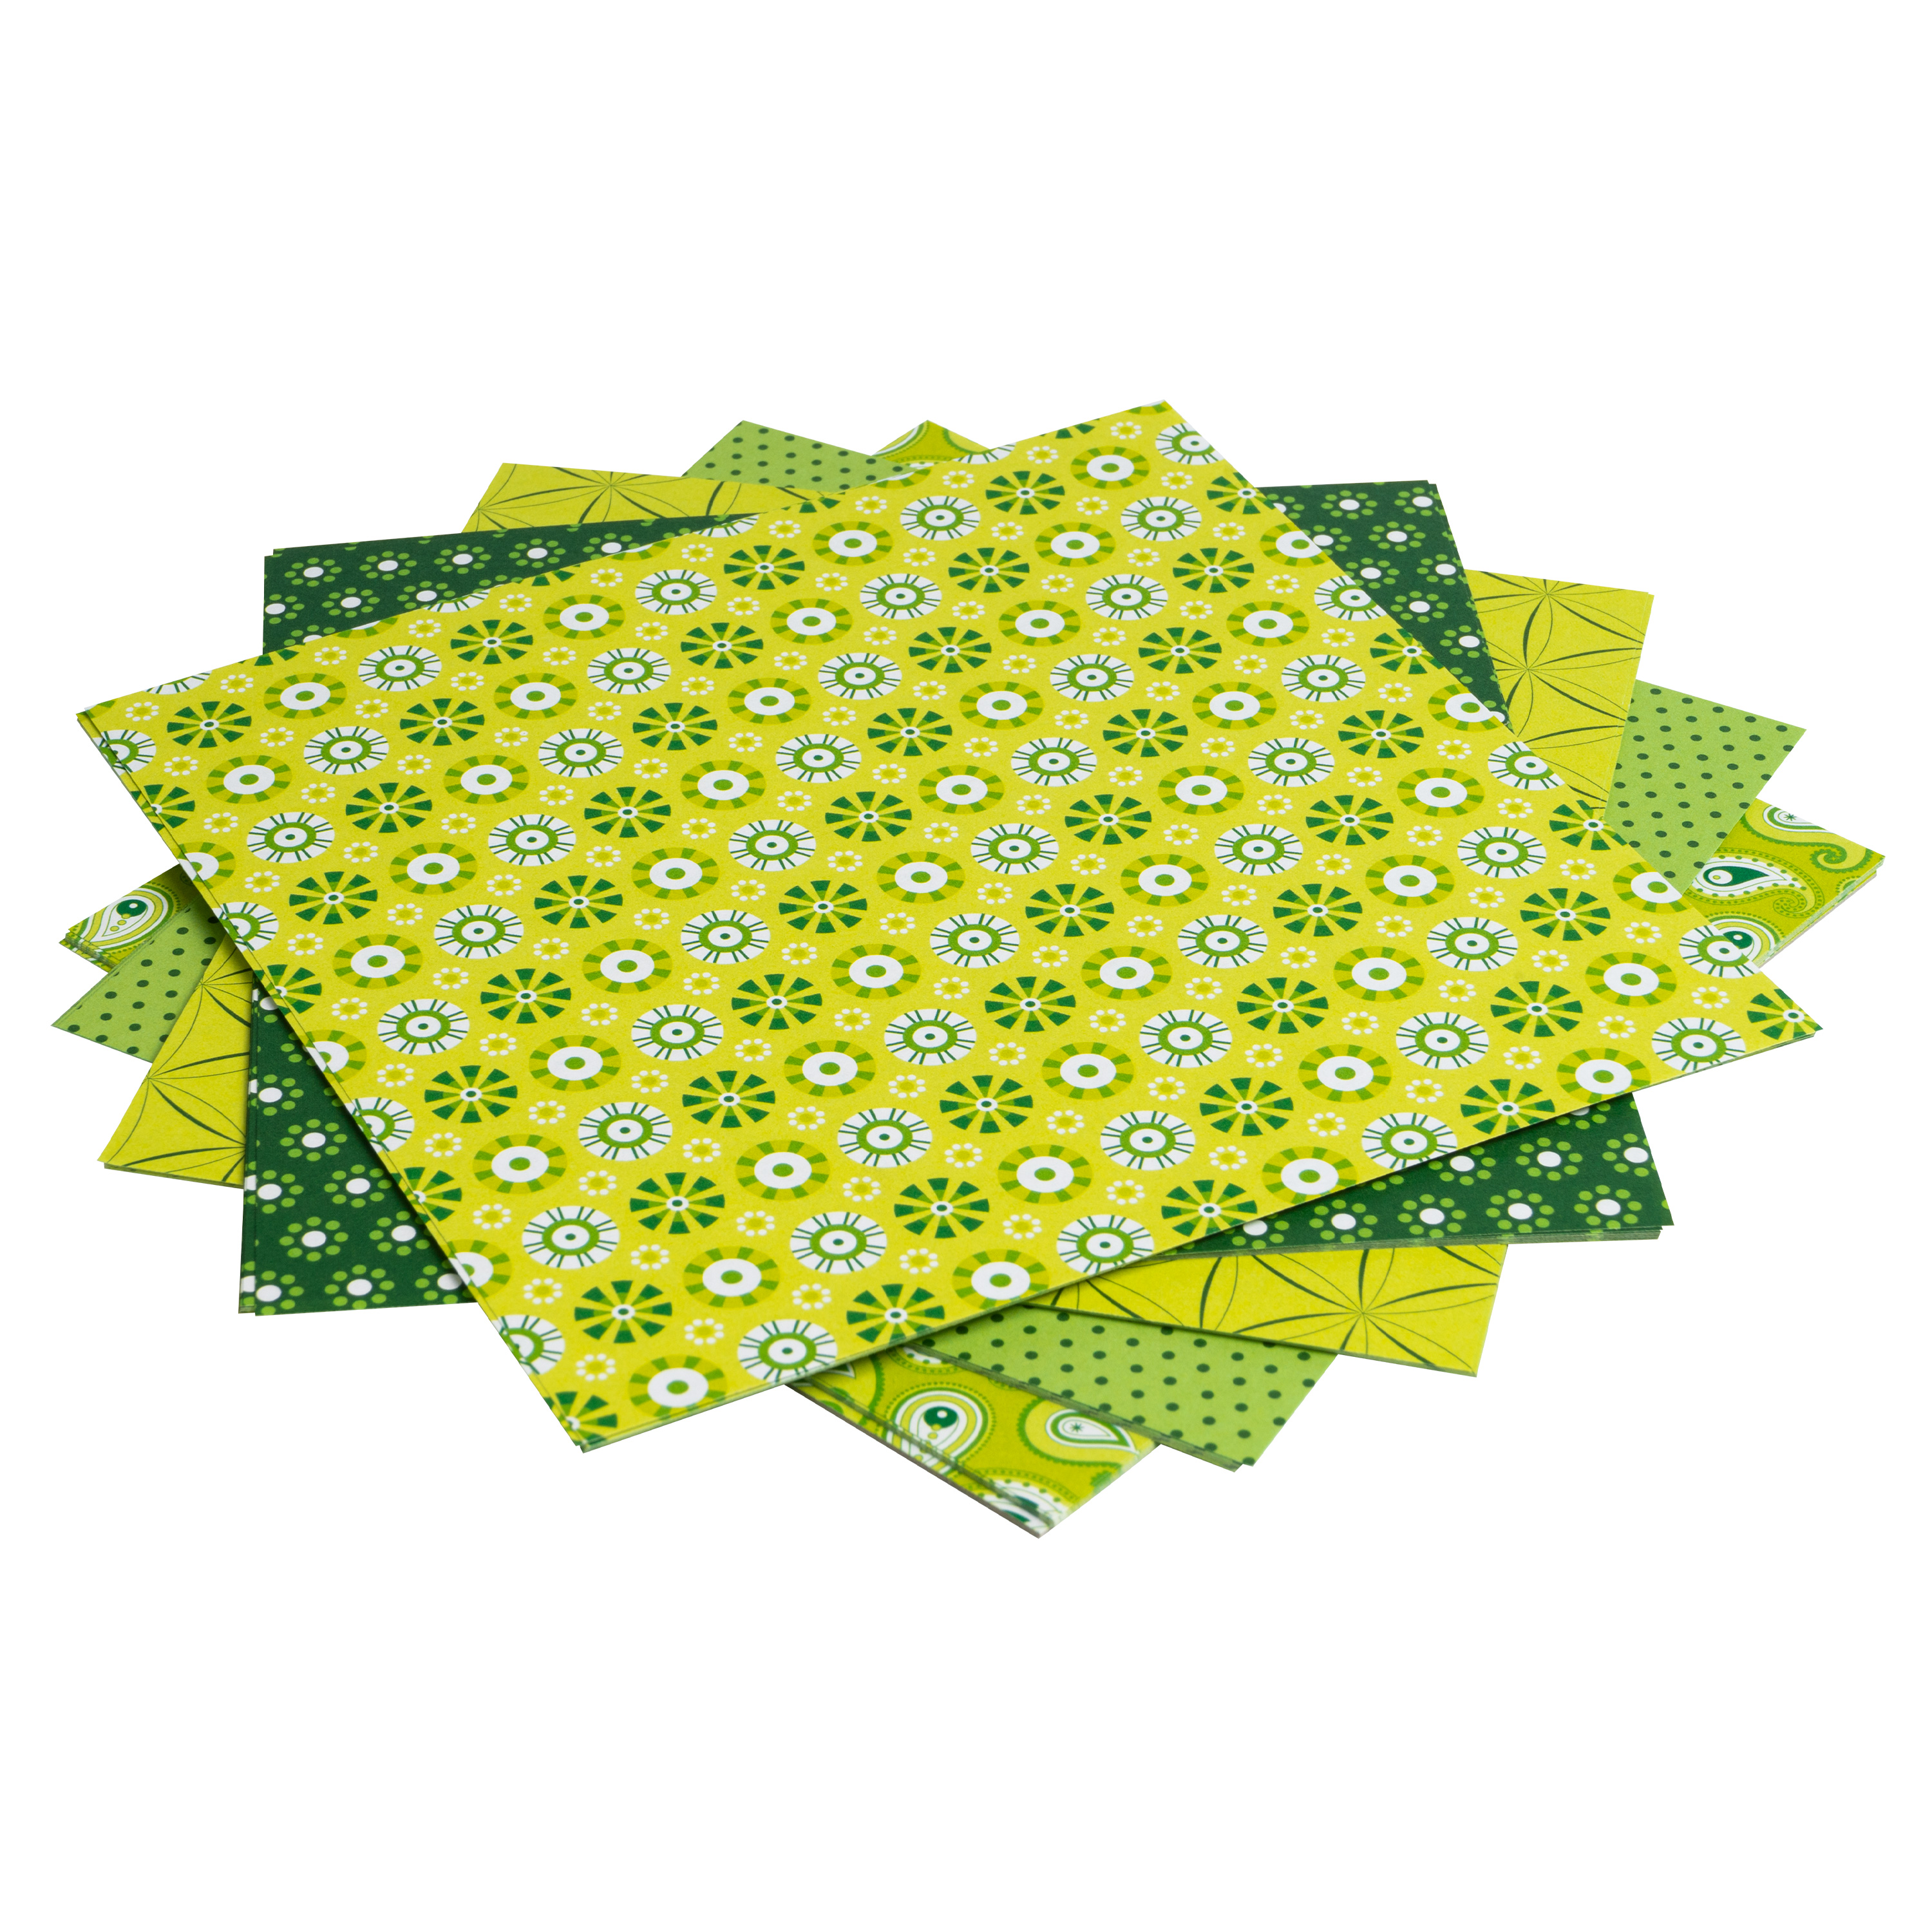 Origami Motiv-Faltblätter 'Basics', 20 x 20 cm, grün